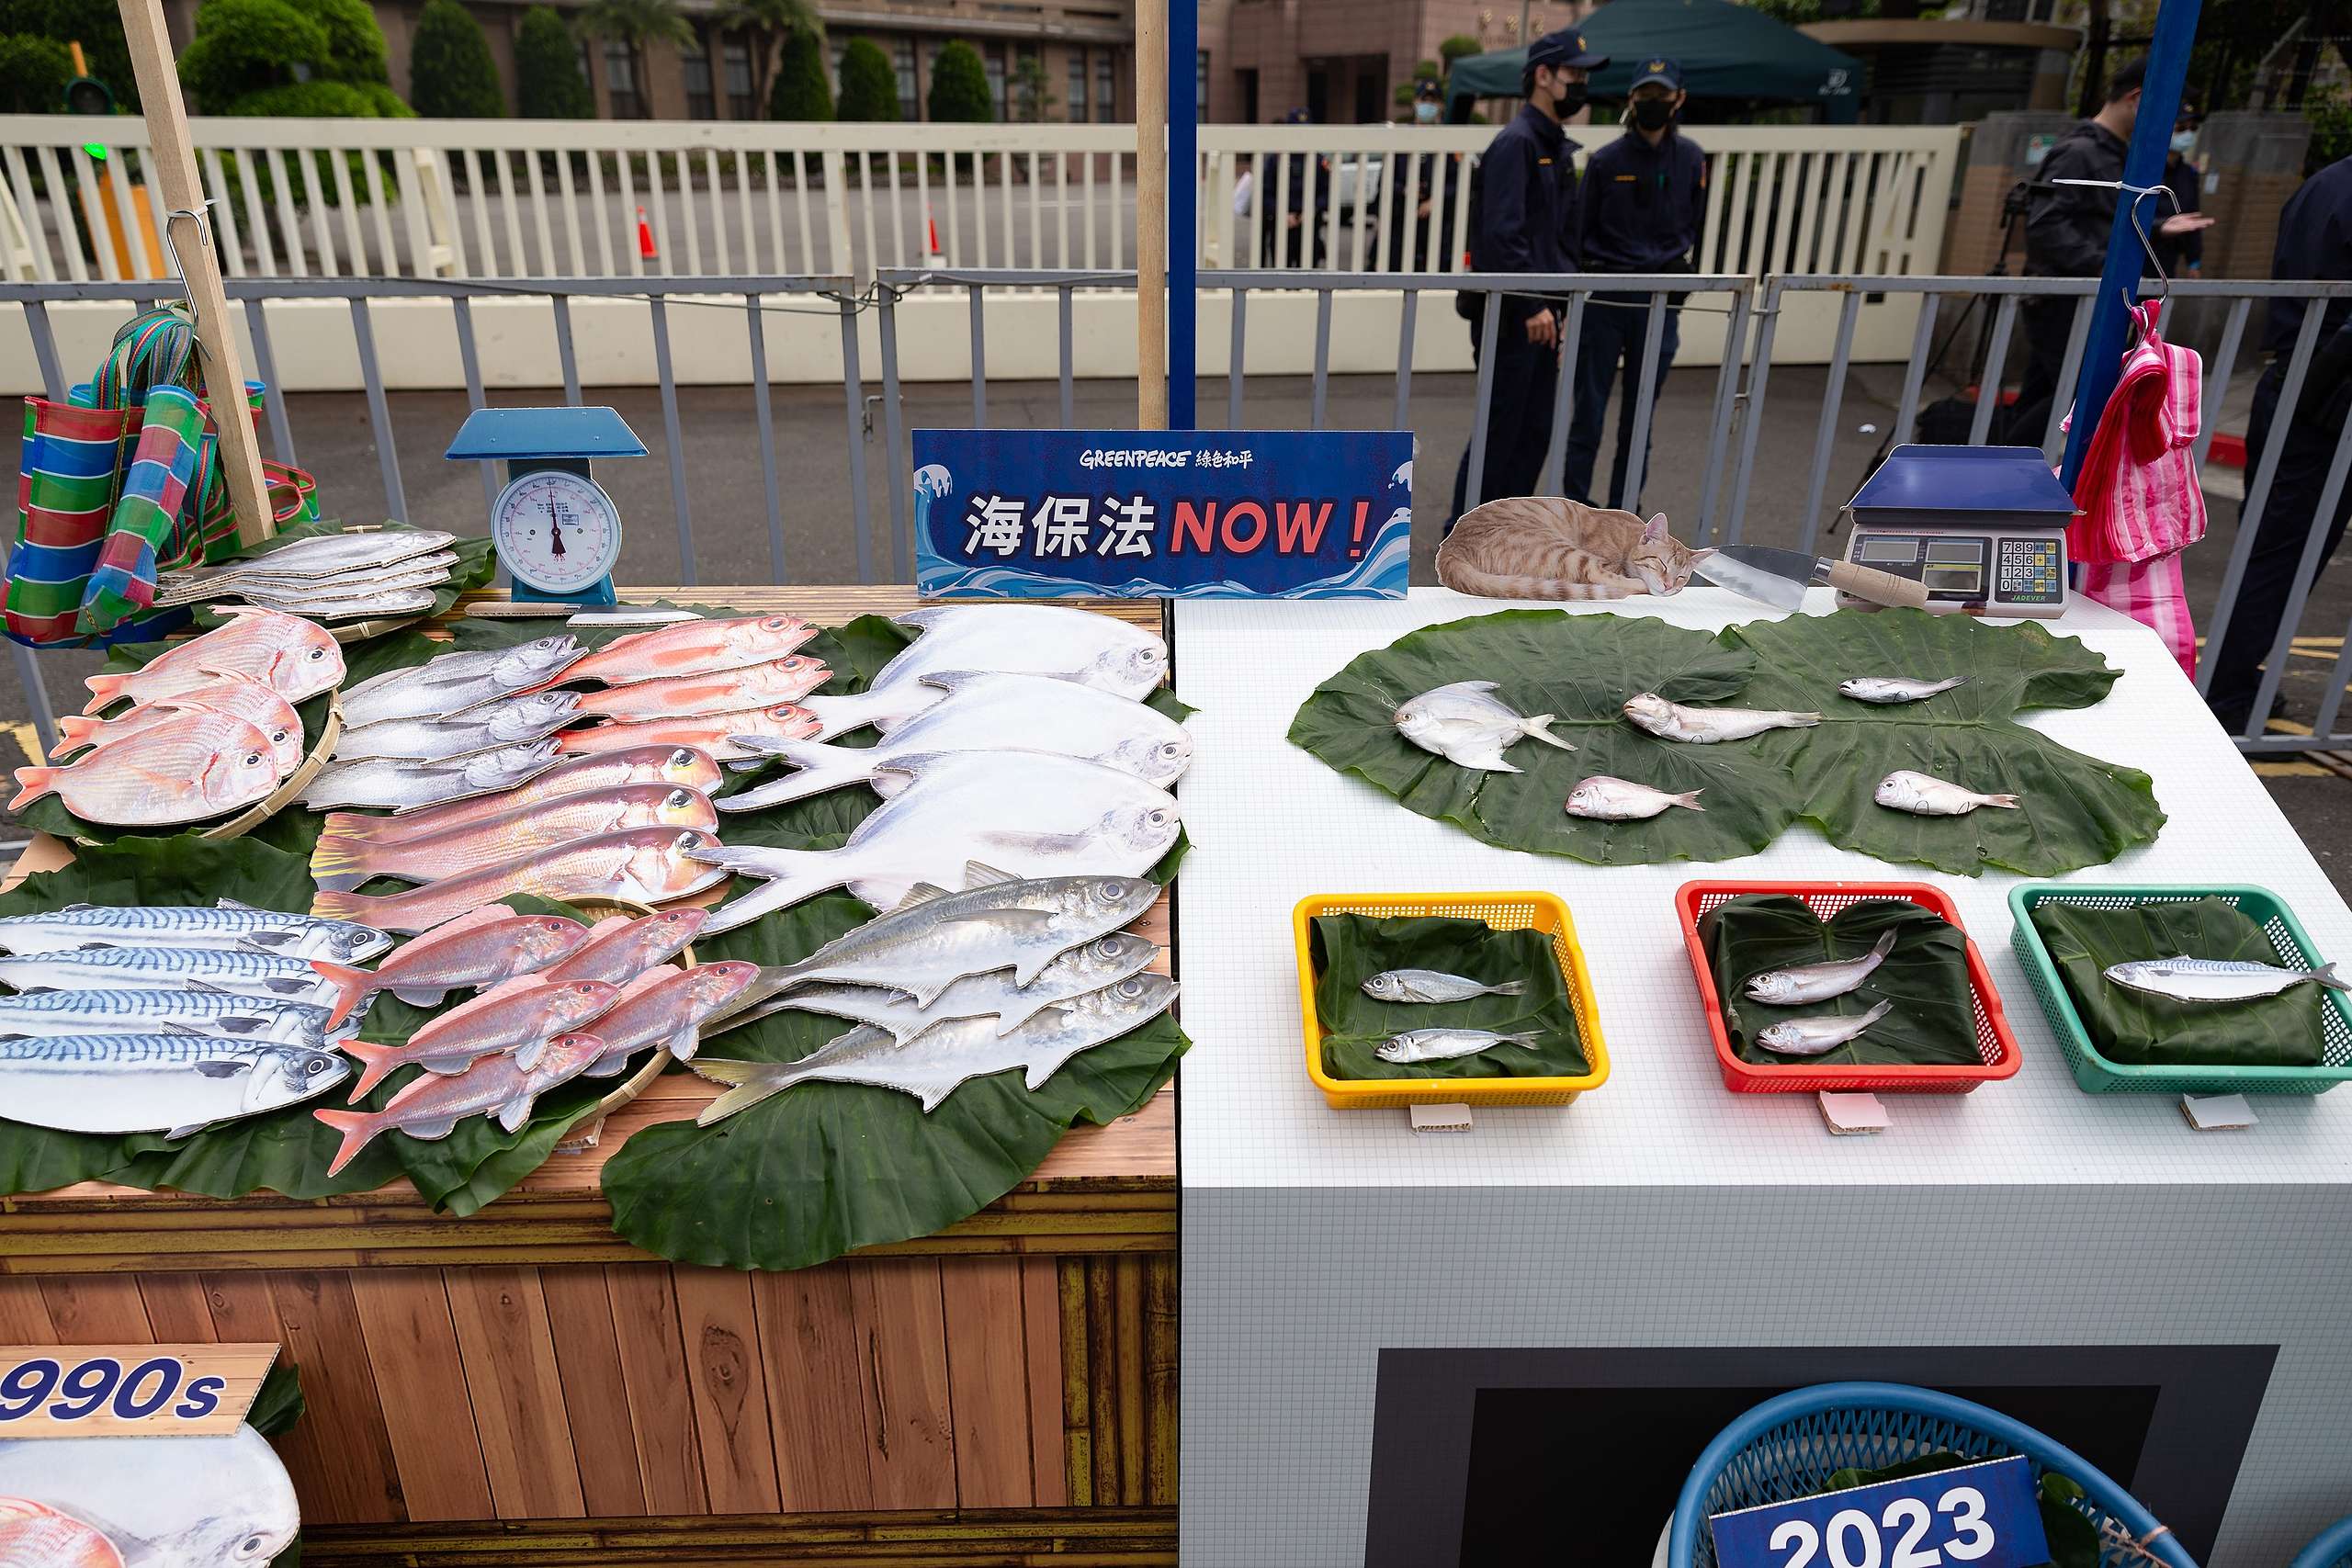 2023年3月9日，綠色和平召開「下一代，魚季猶存？」記者會，揭露臺灣6種市場常見的魚類體長，相較1990年代，已大幅縮水，顯示魚類生態正邁向枯竭。圖中右邊的是實際在漁市中販賣的幼魚。